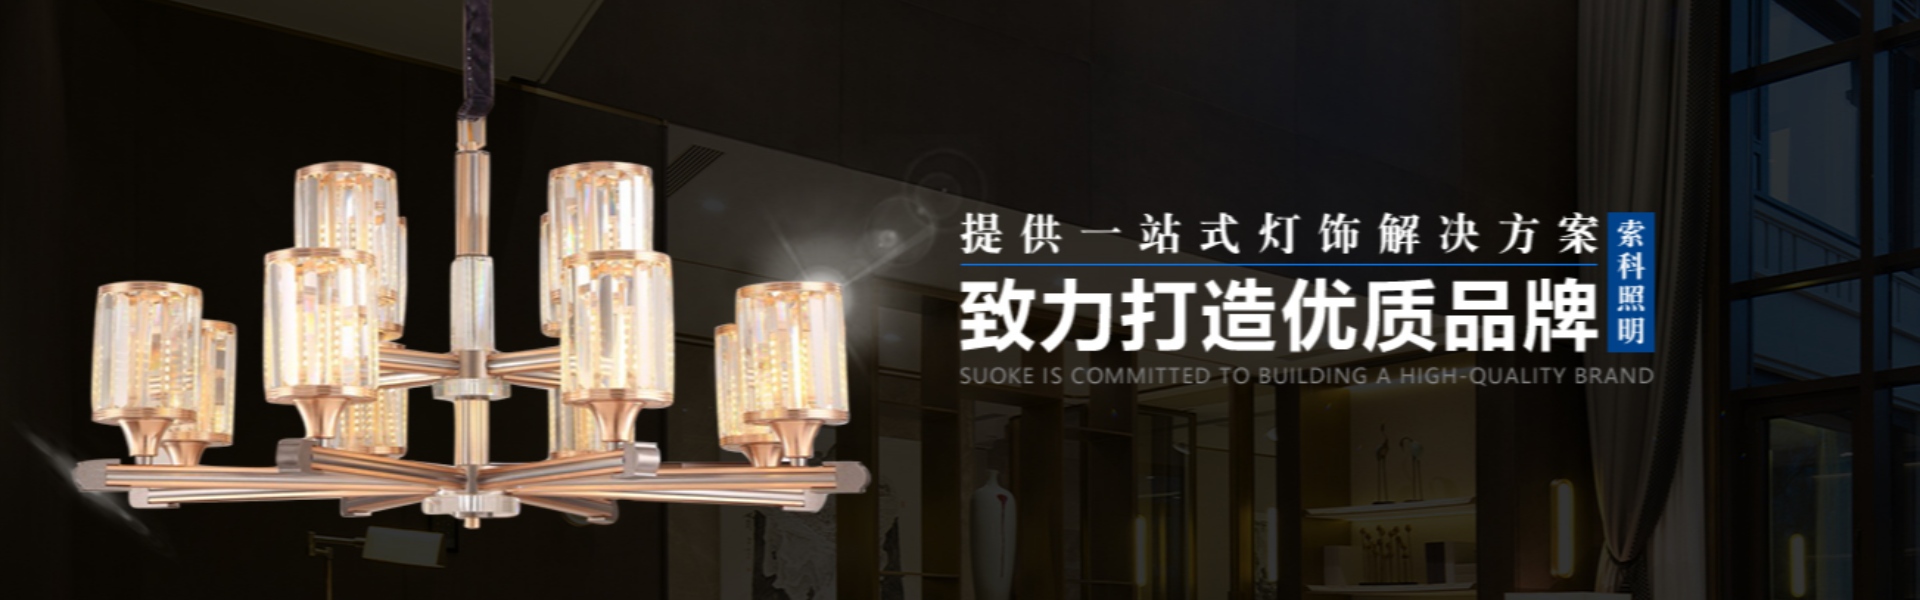 huisverlichting, buitenverlichting, zonne-verlichting,Zhongshan Suoke Lighting Electric Co., Ltd.